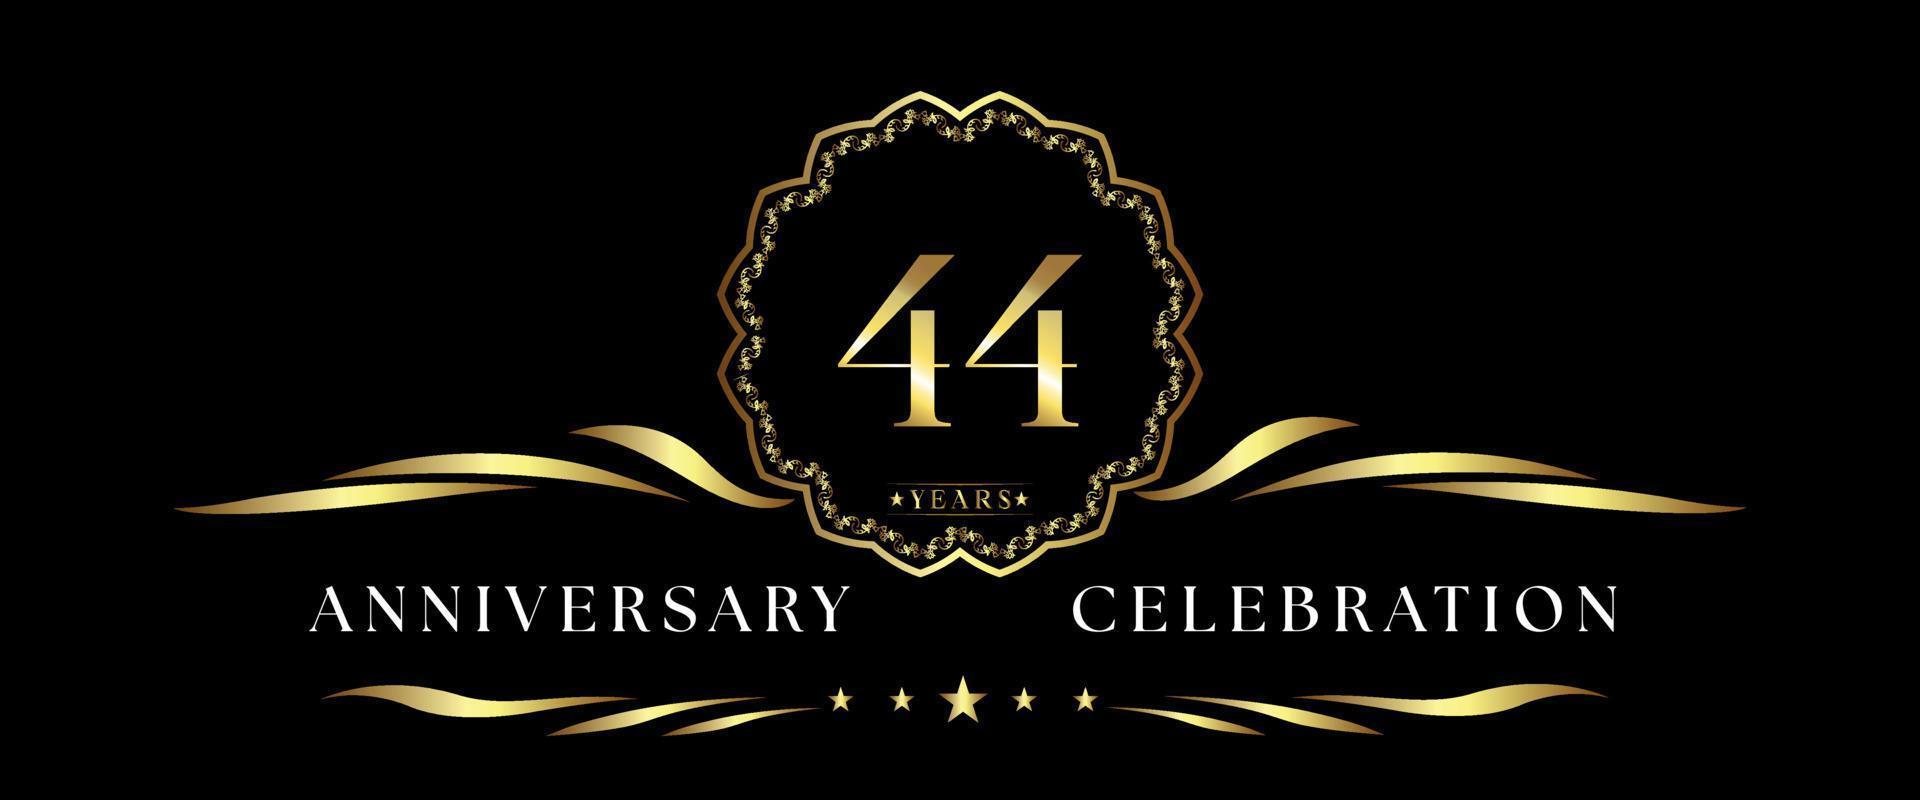 Celebrazione dell'anniversario di 44 anni con cornice decorativa dorata isolata su sfondo nero. disegno vettoriale per biglietto di auguri, festa di compleanno, matrimonio, festa evento, cerimonia. Logo dell'anniversario di 44 anni.